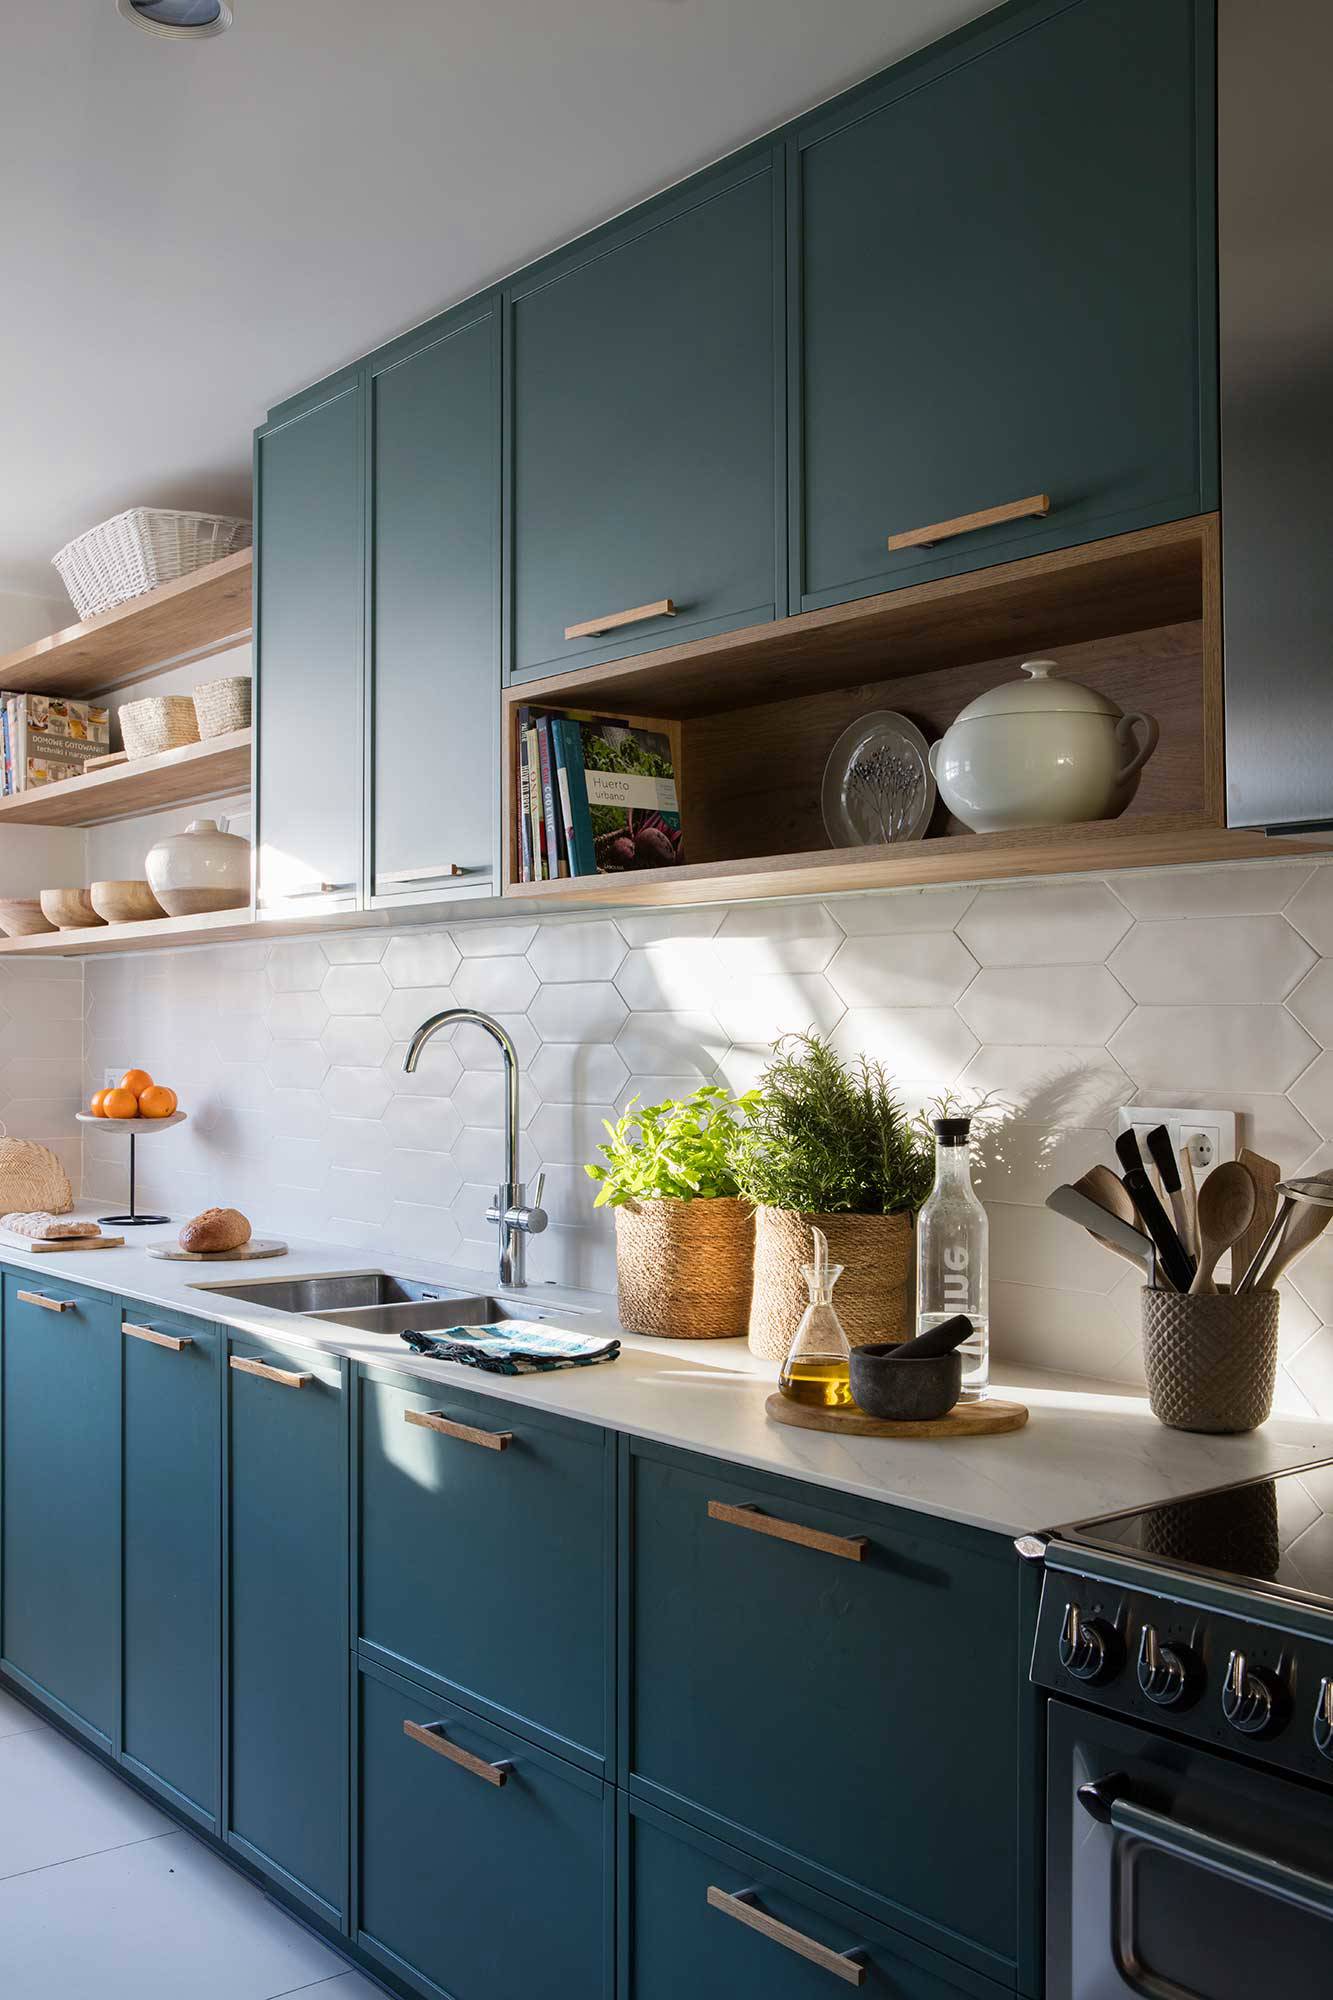 Cocina con muebles azul verdoso, azulejos blancos y detalles en madera.